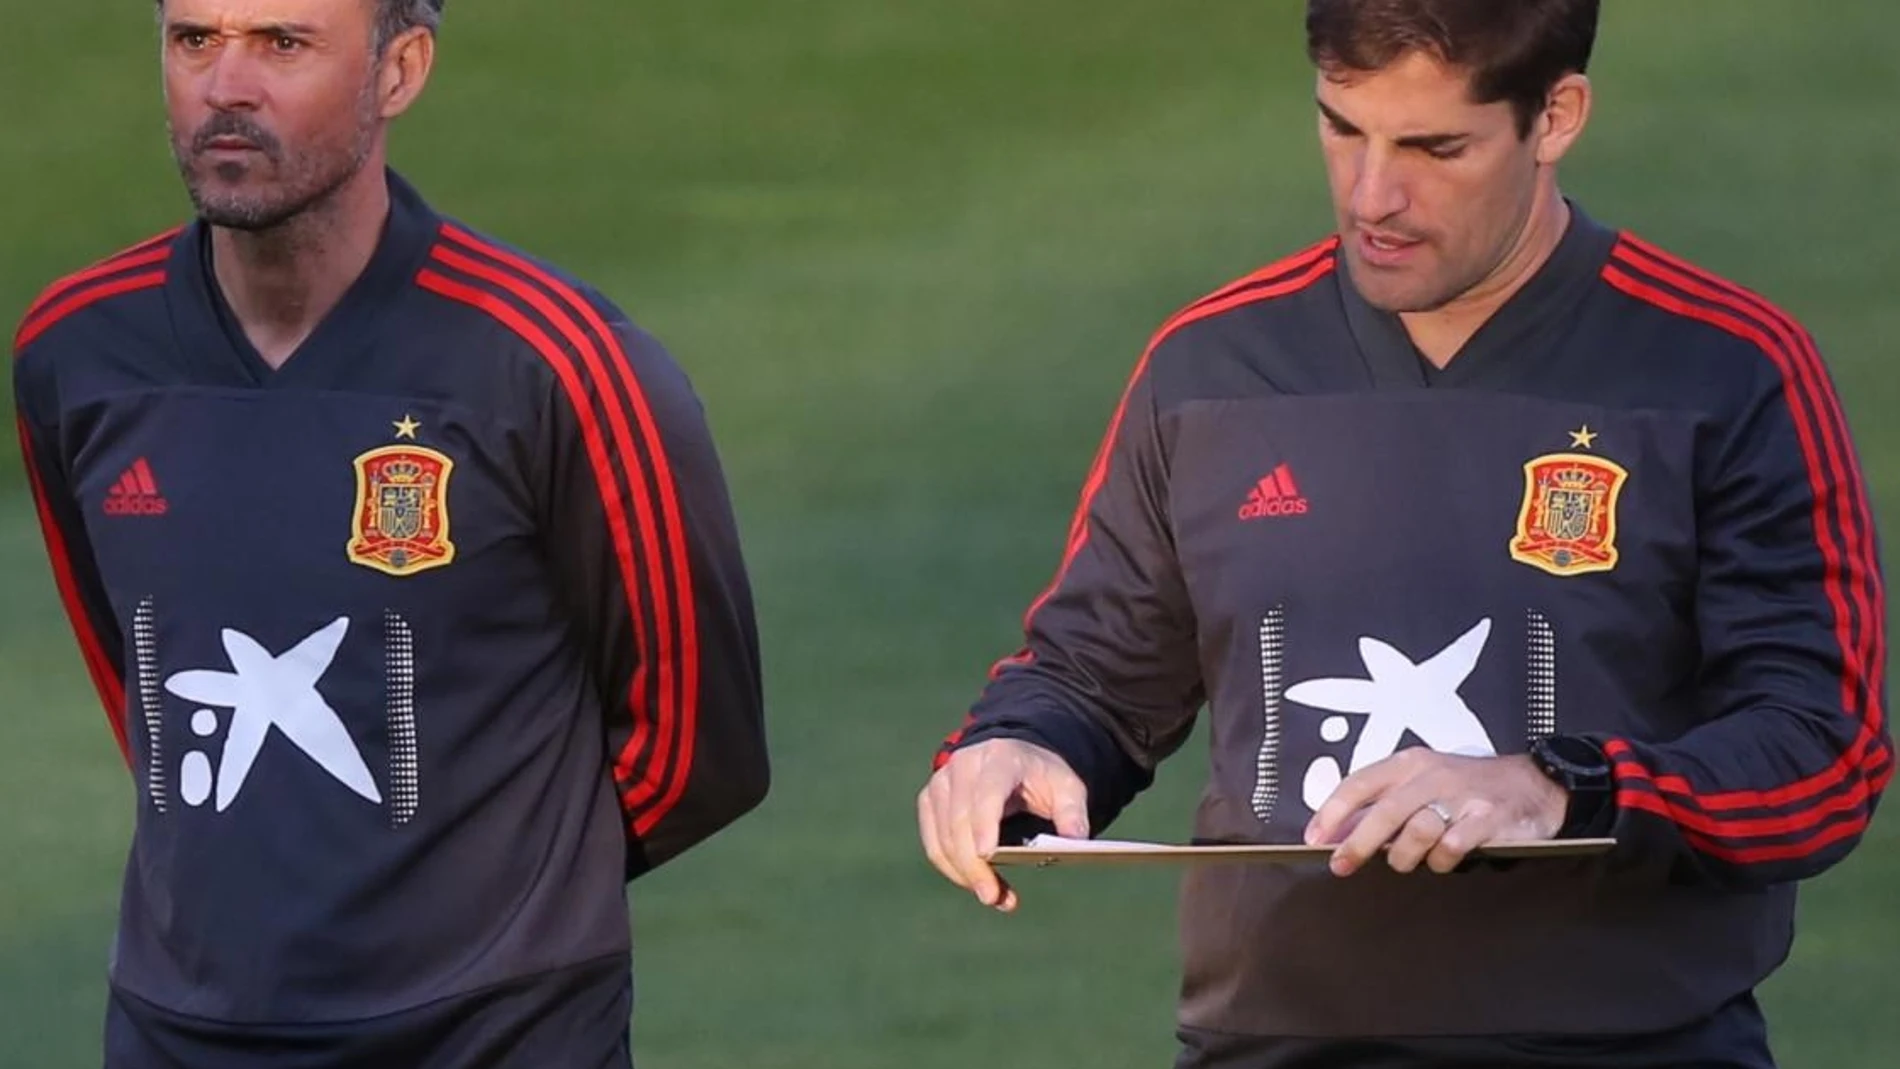 Luis Enrique y Robert Moreno, durante un entrenamiento de la selección española.